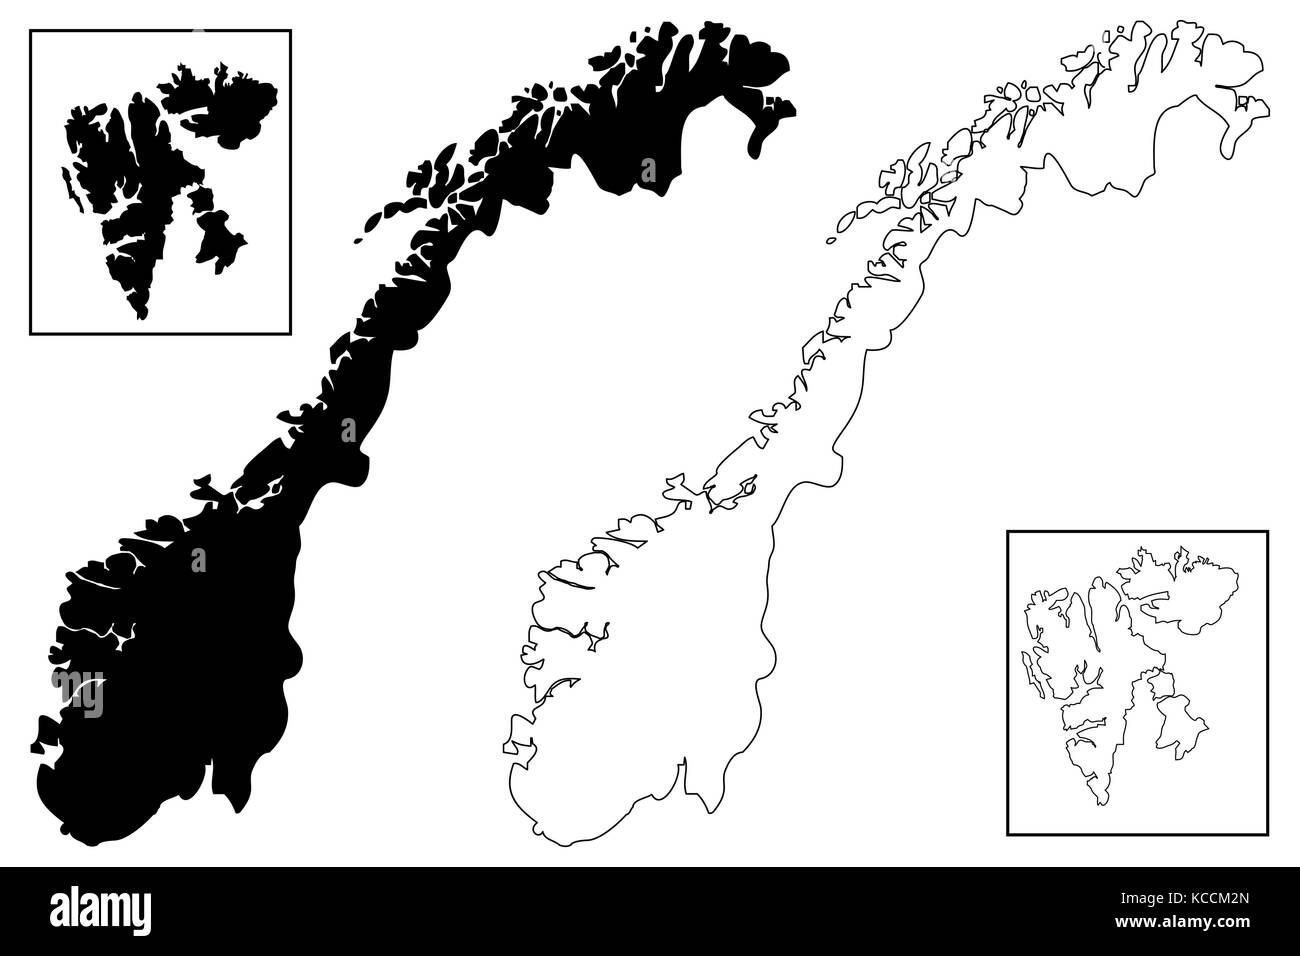 Norwegen karte Vektor-illustration, kritzeln Skizze Norwegen (Svalbard) Stock Vektor